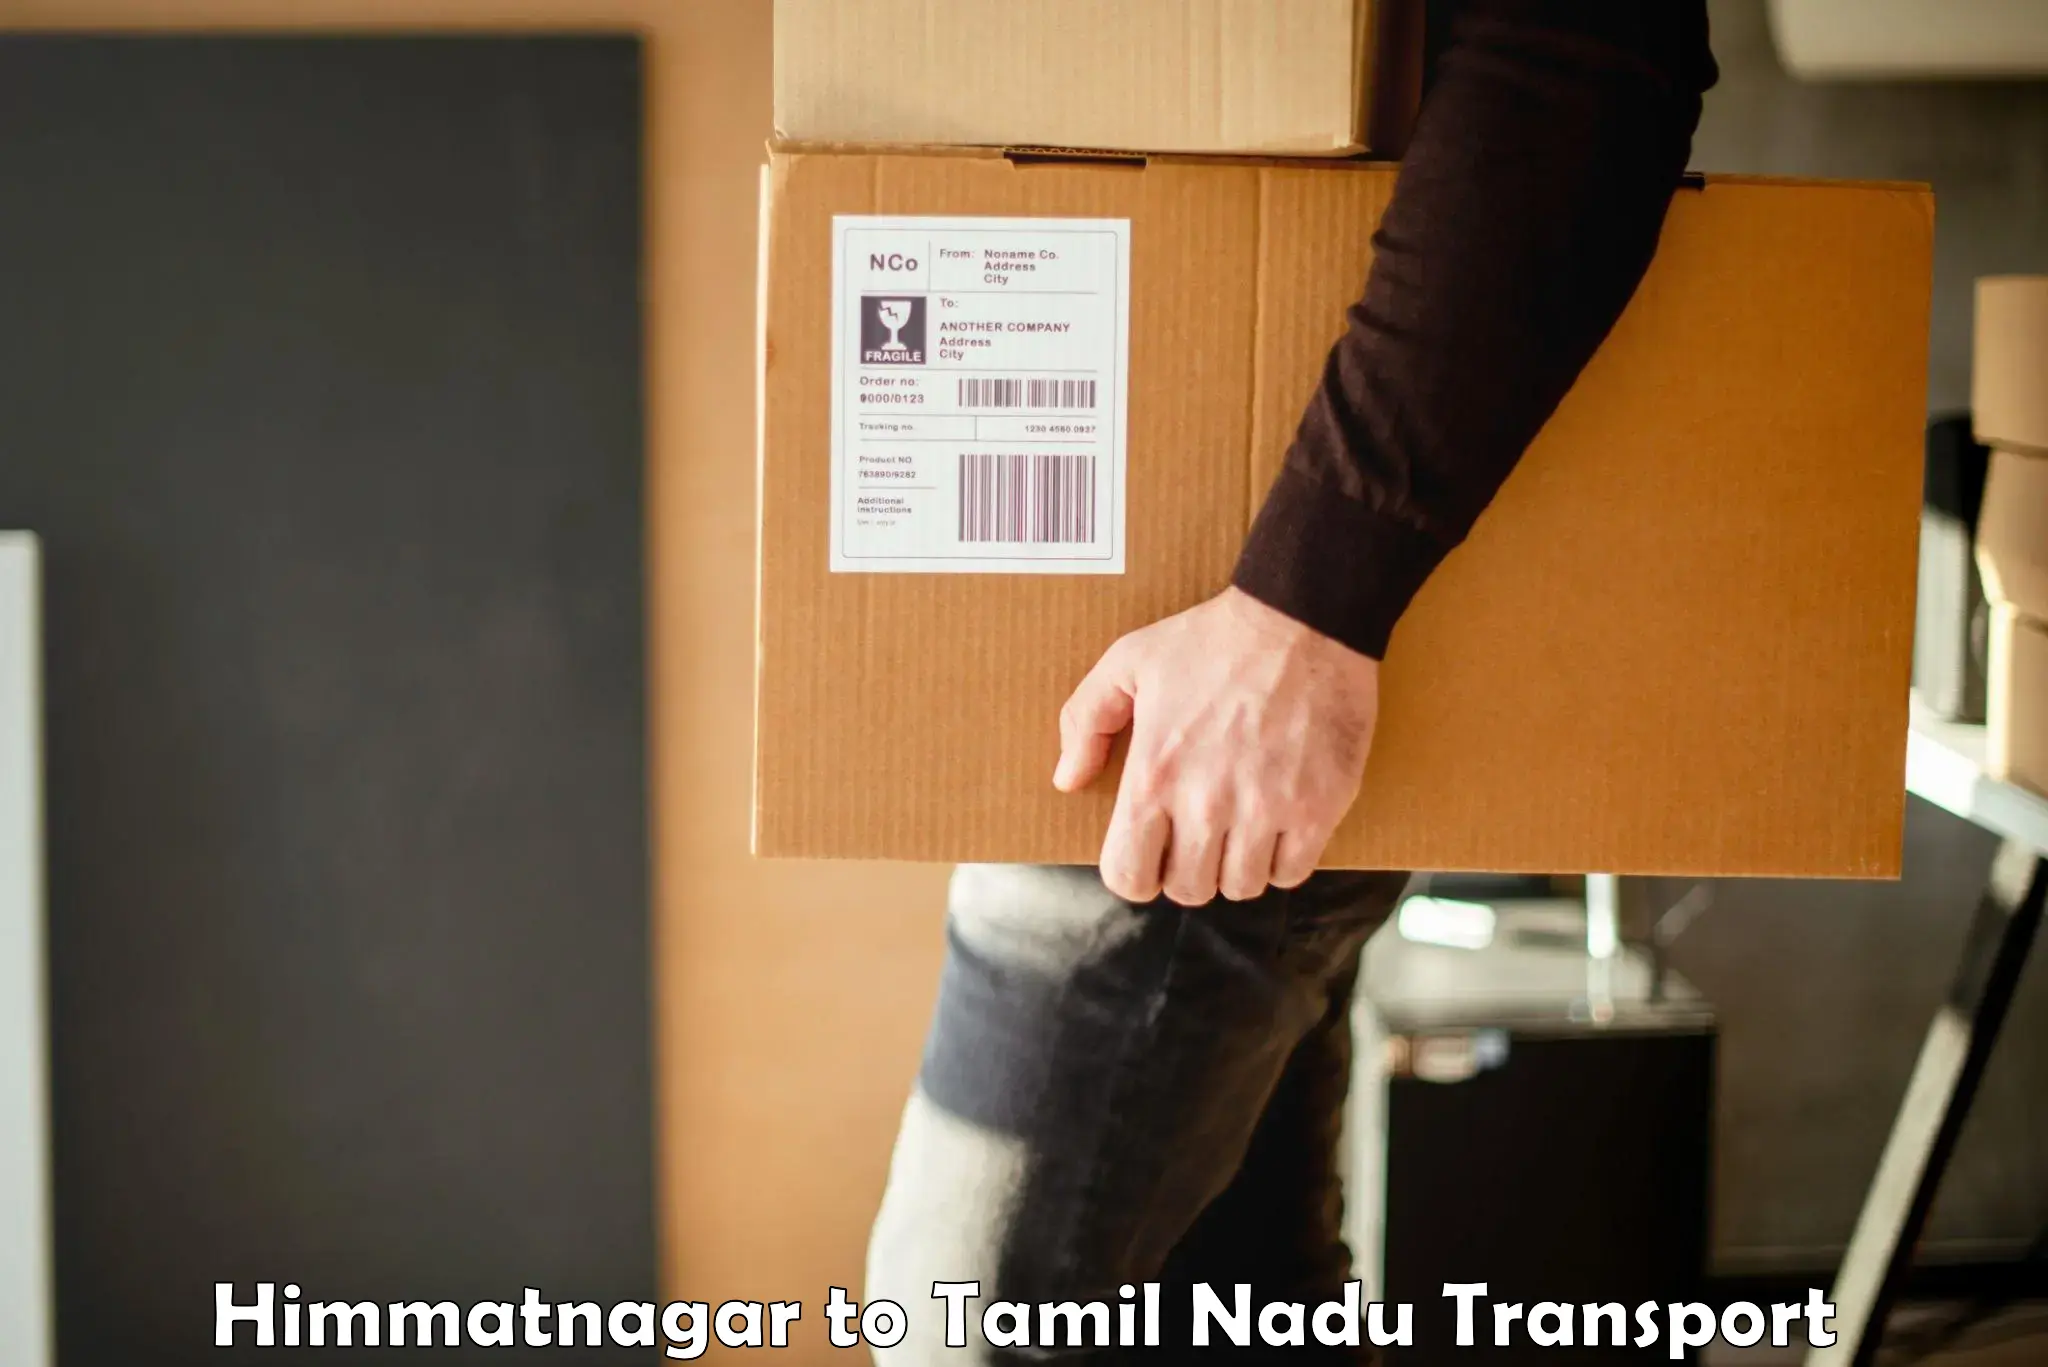 Delivery service Himmatnagar to Cumbum